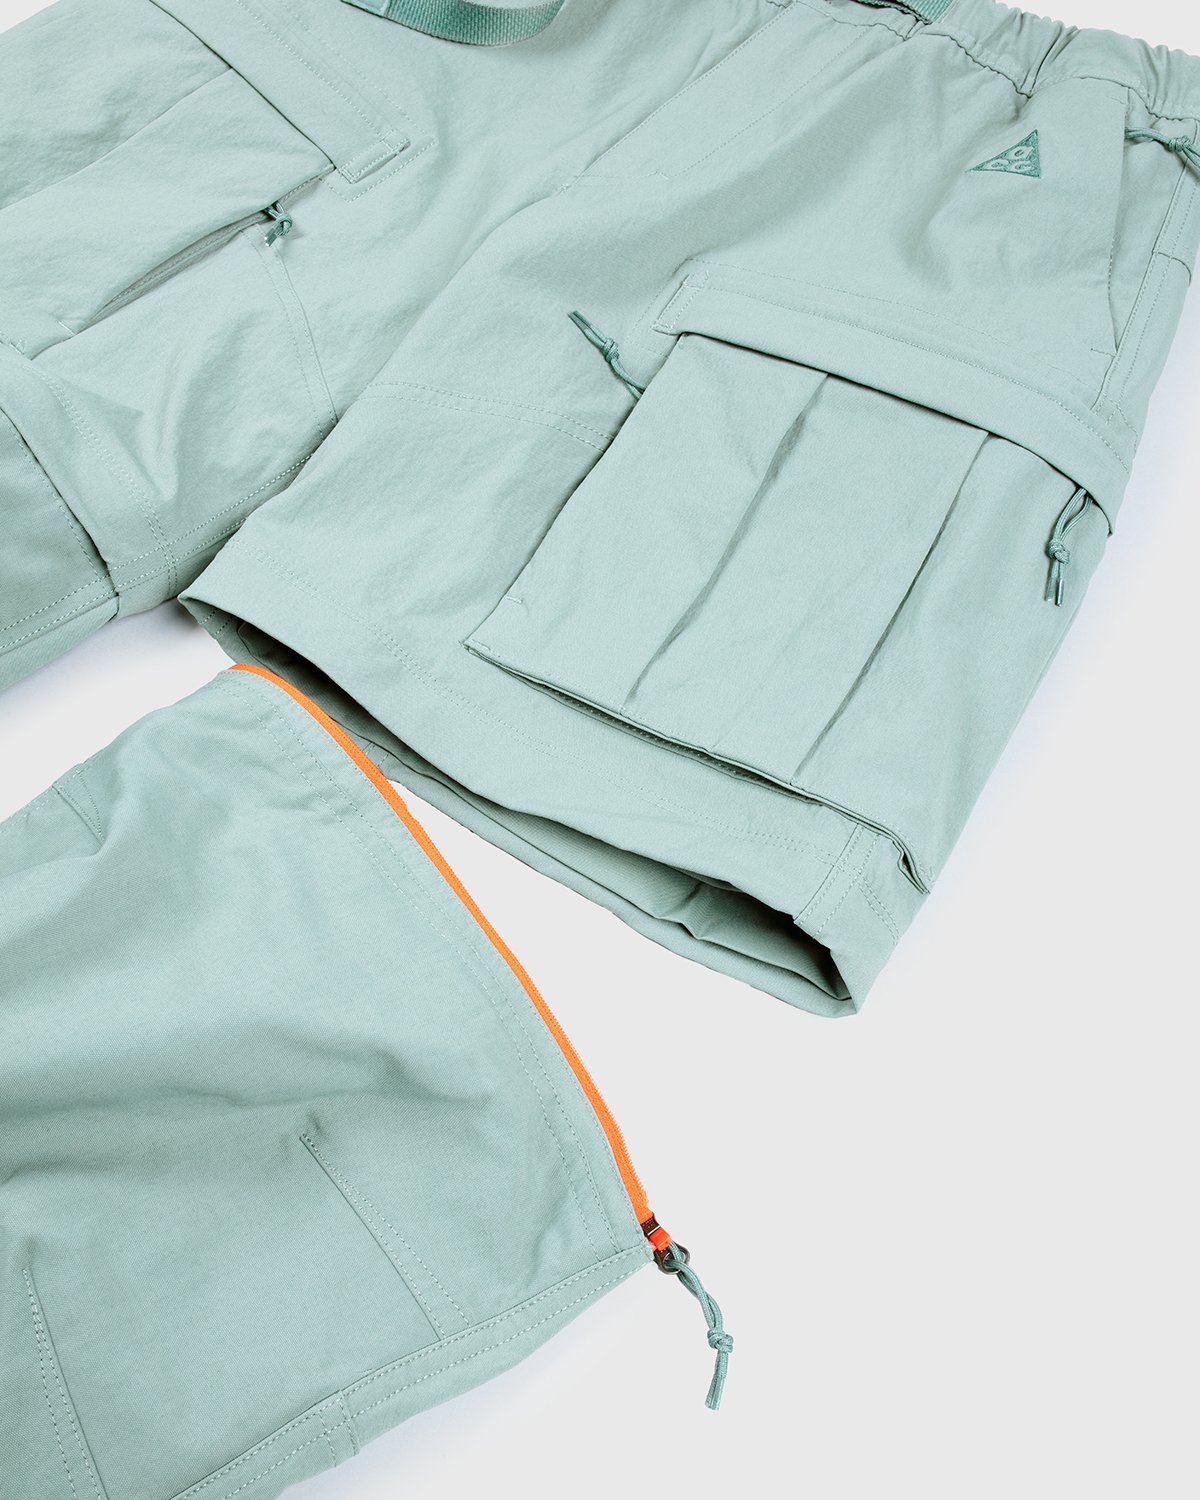 Nike ACG - M NRG ACG Smith Smt Cargo Pant Green - Clothing - Green - Image 6